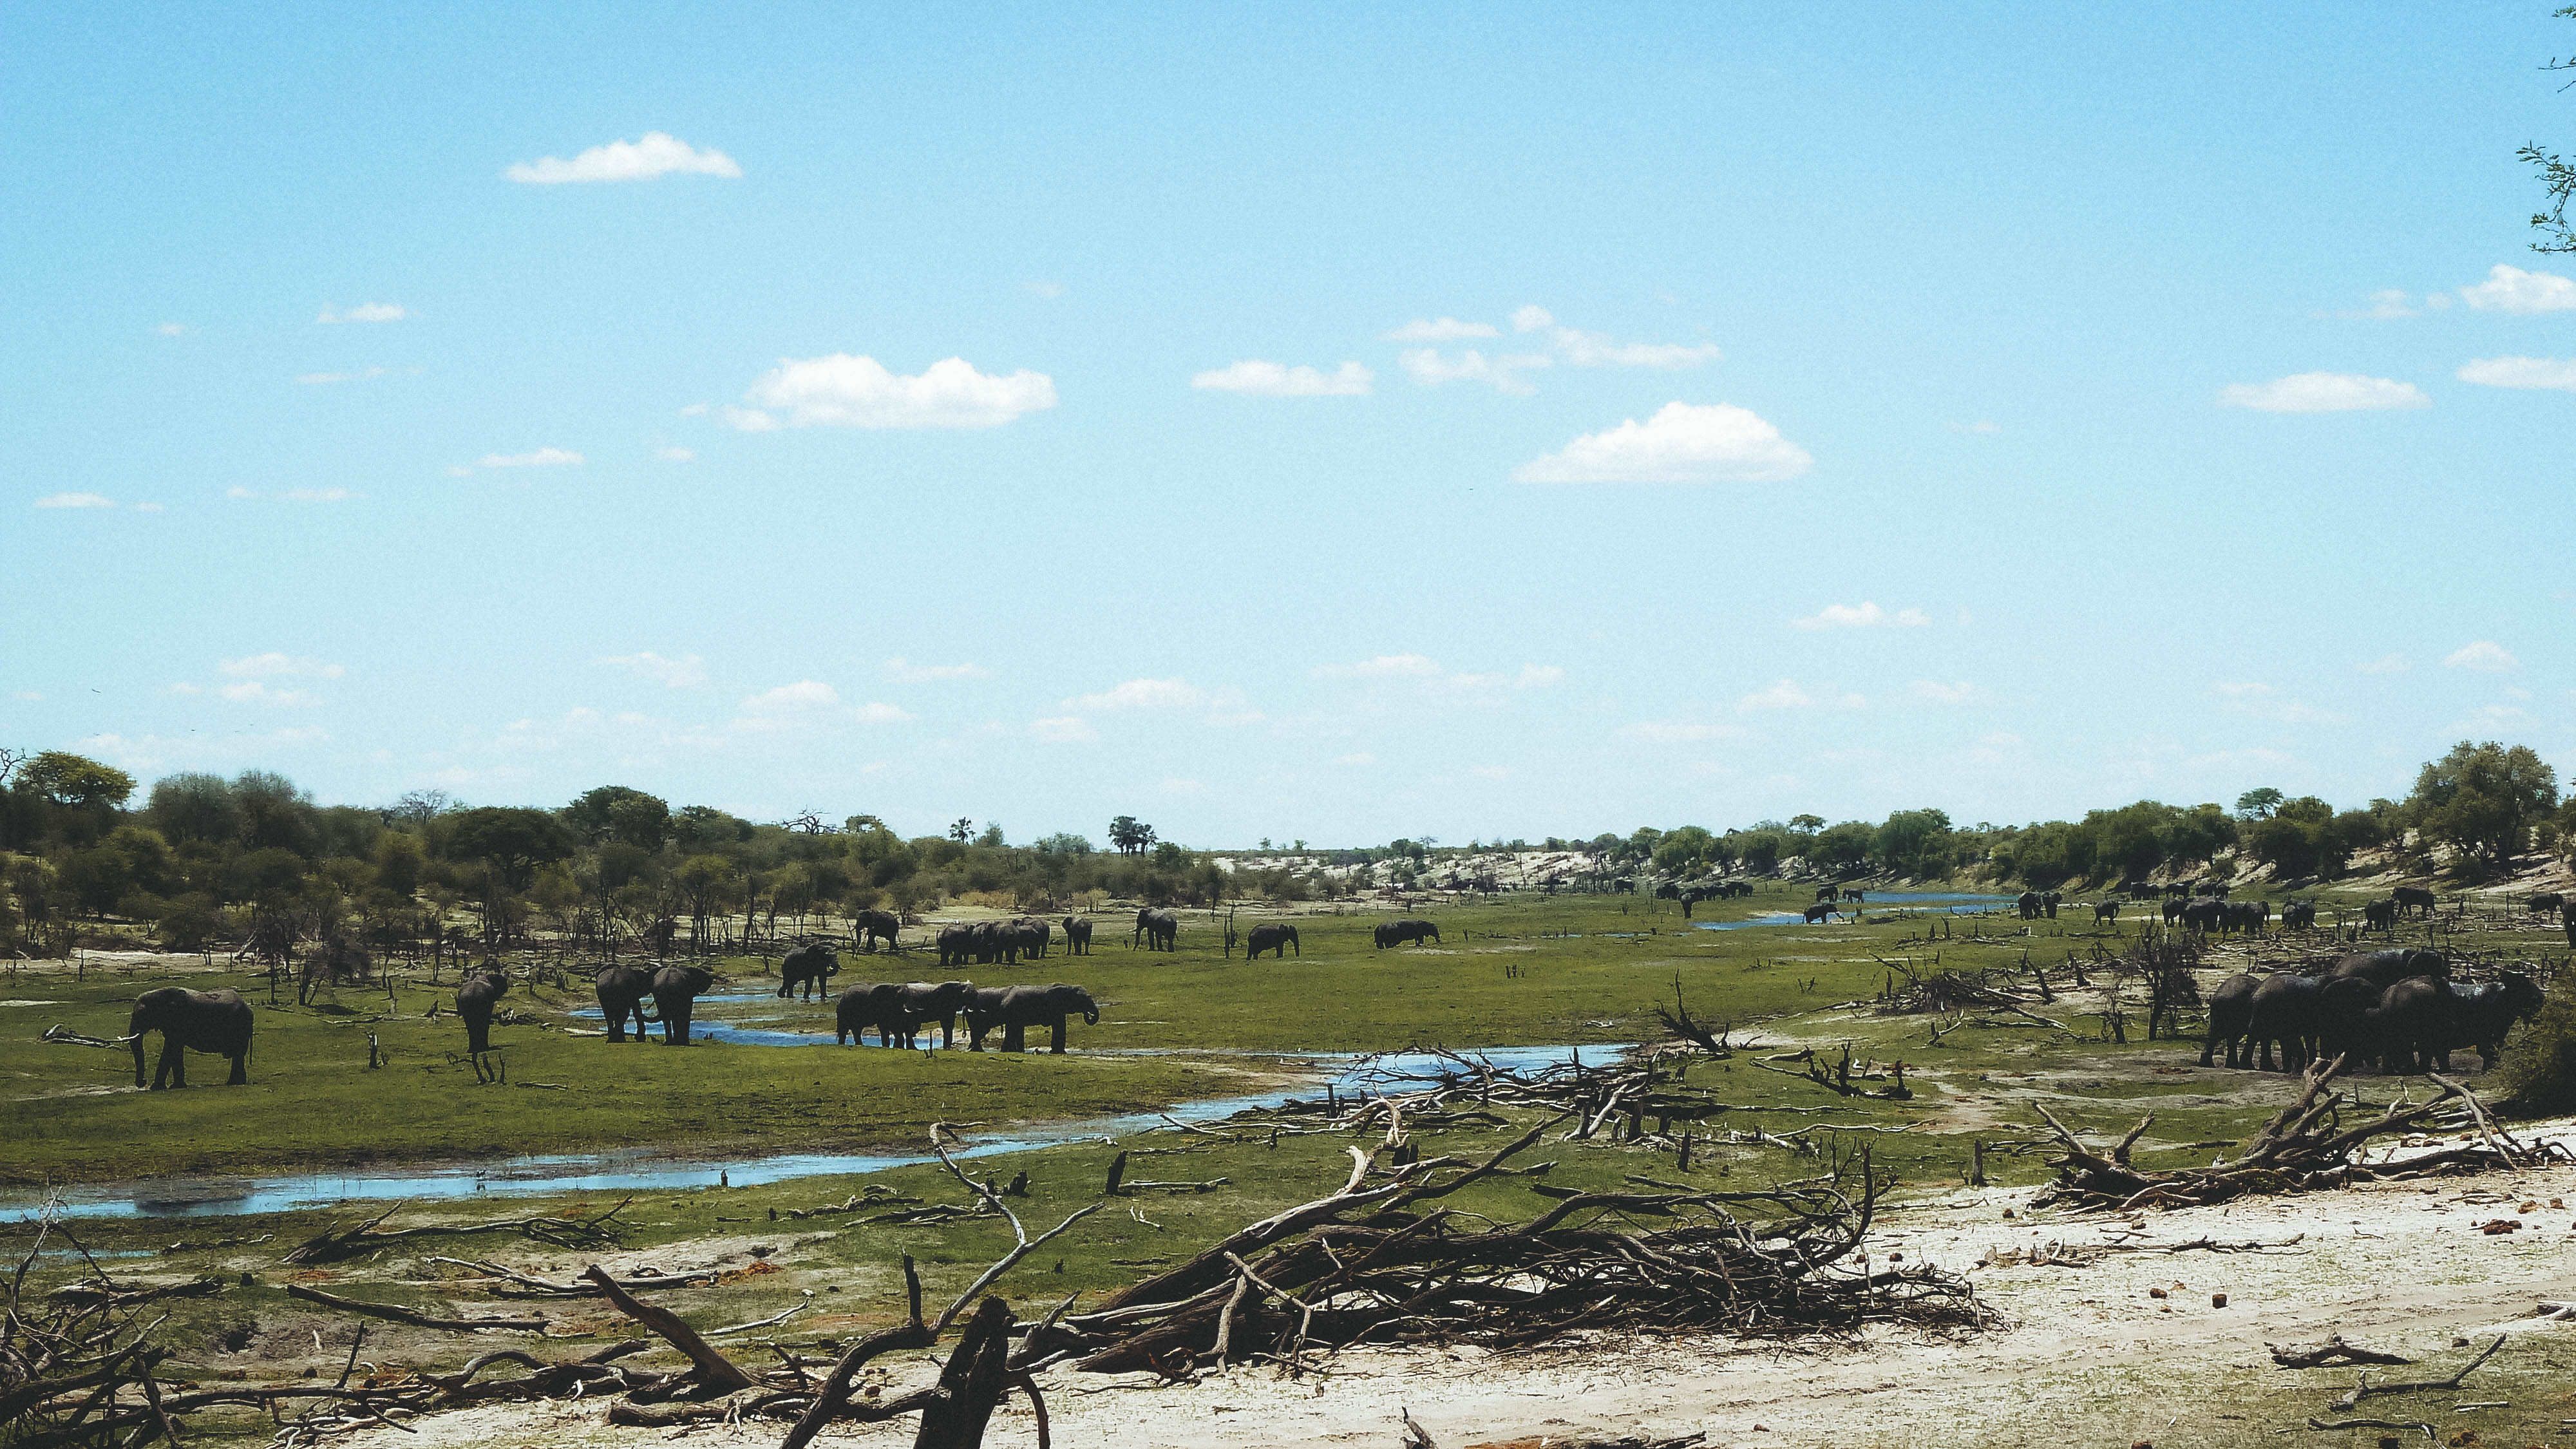 Touring Botswana